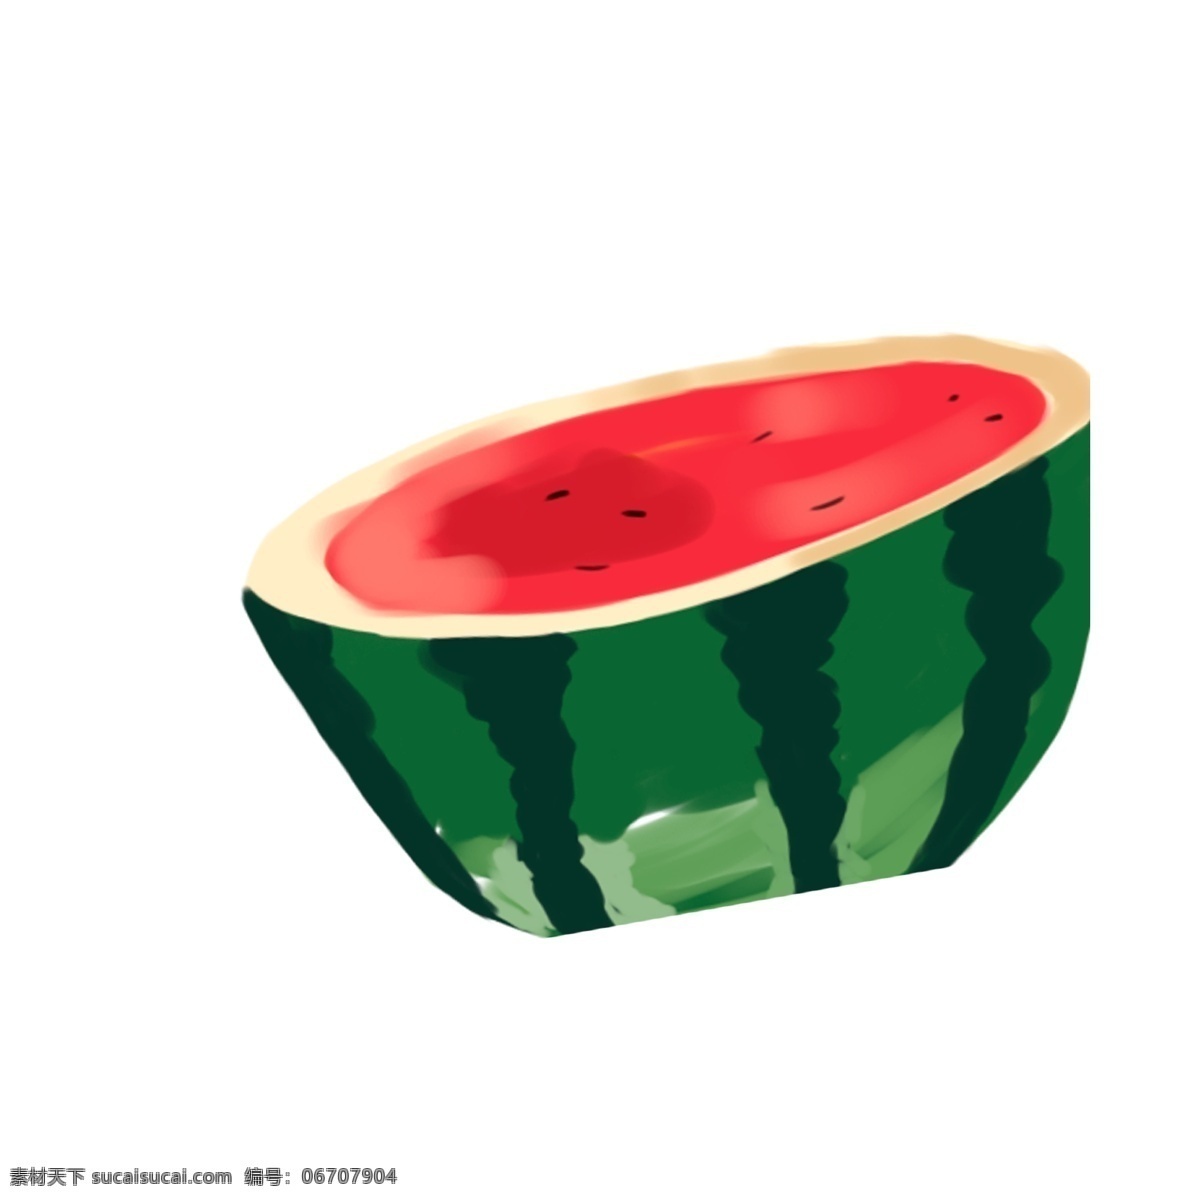 卡通 手绘 半 西瓜 元素 清凉 夏季 水果 半个西瓜 插画设计